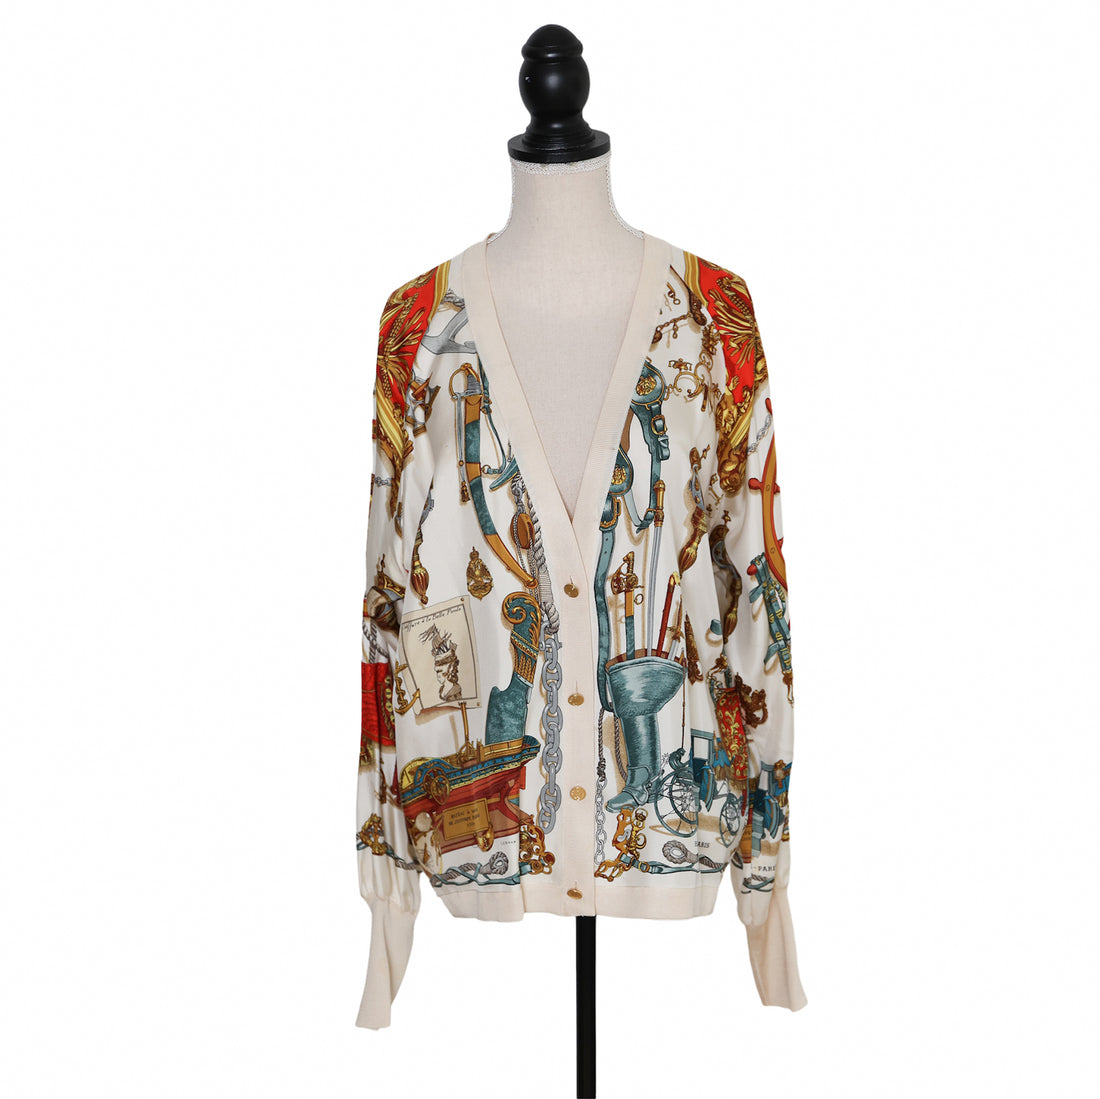 Hermès 1992 "Musée" silk cardigan